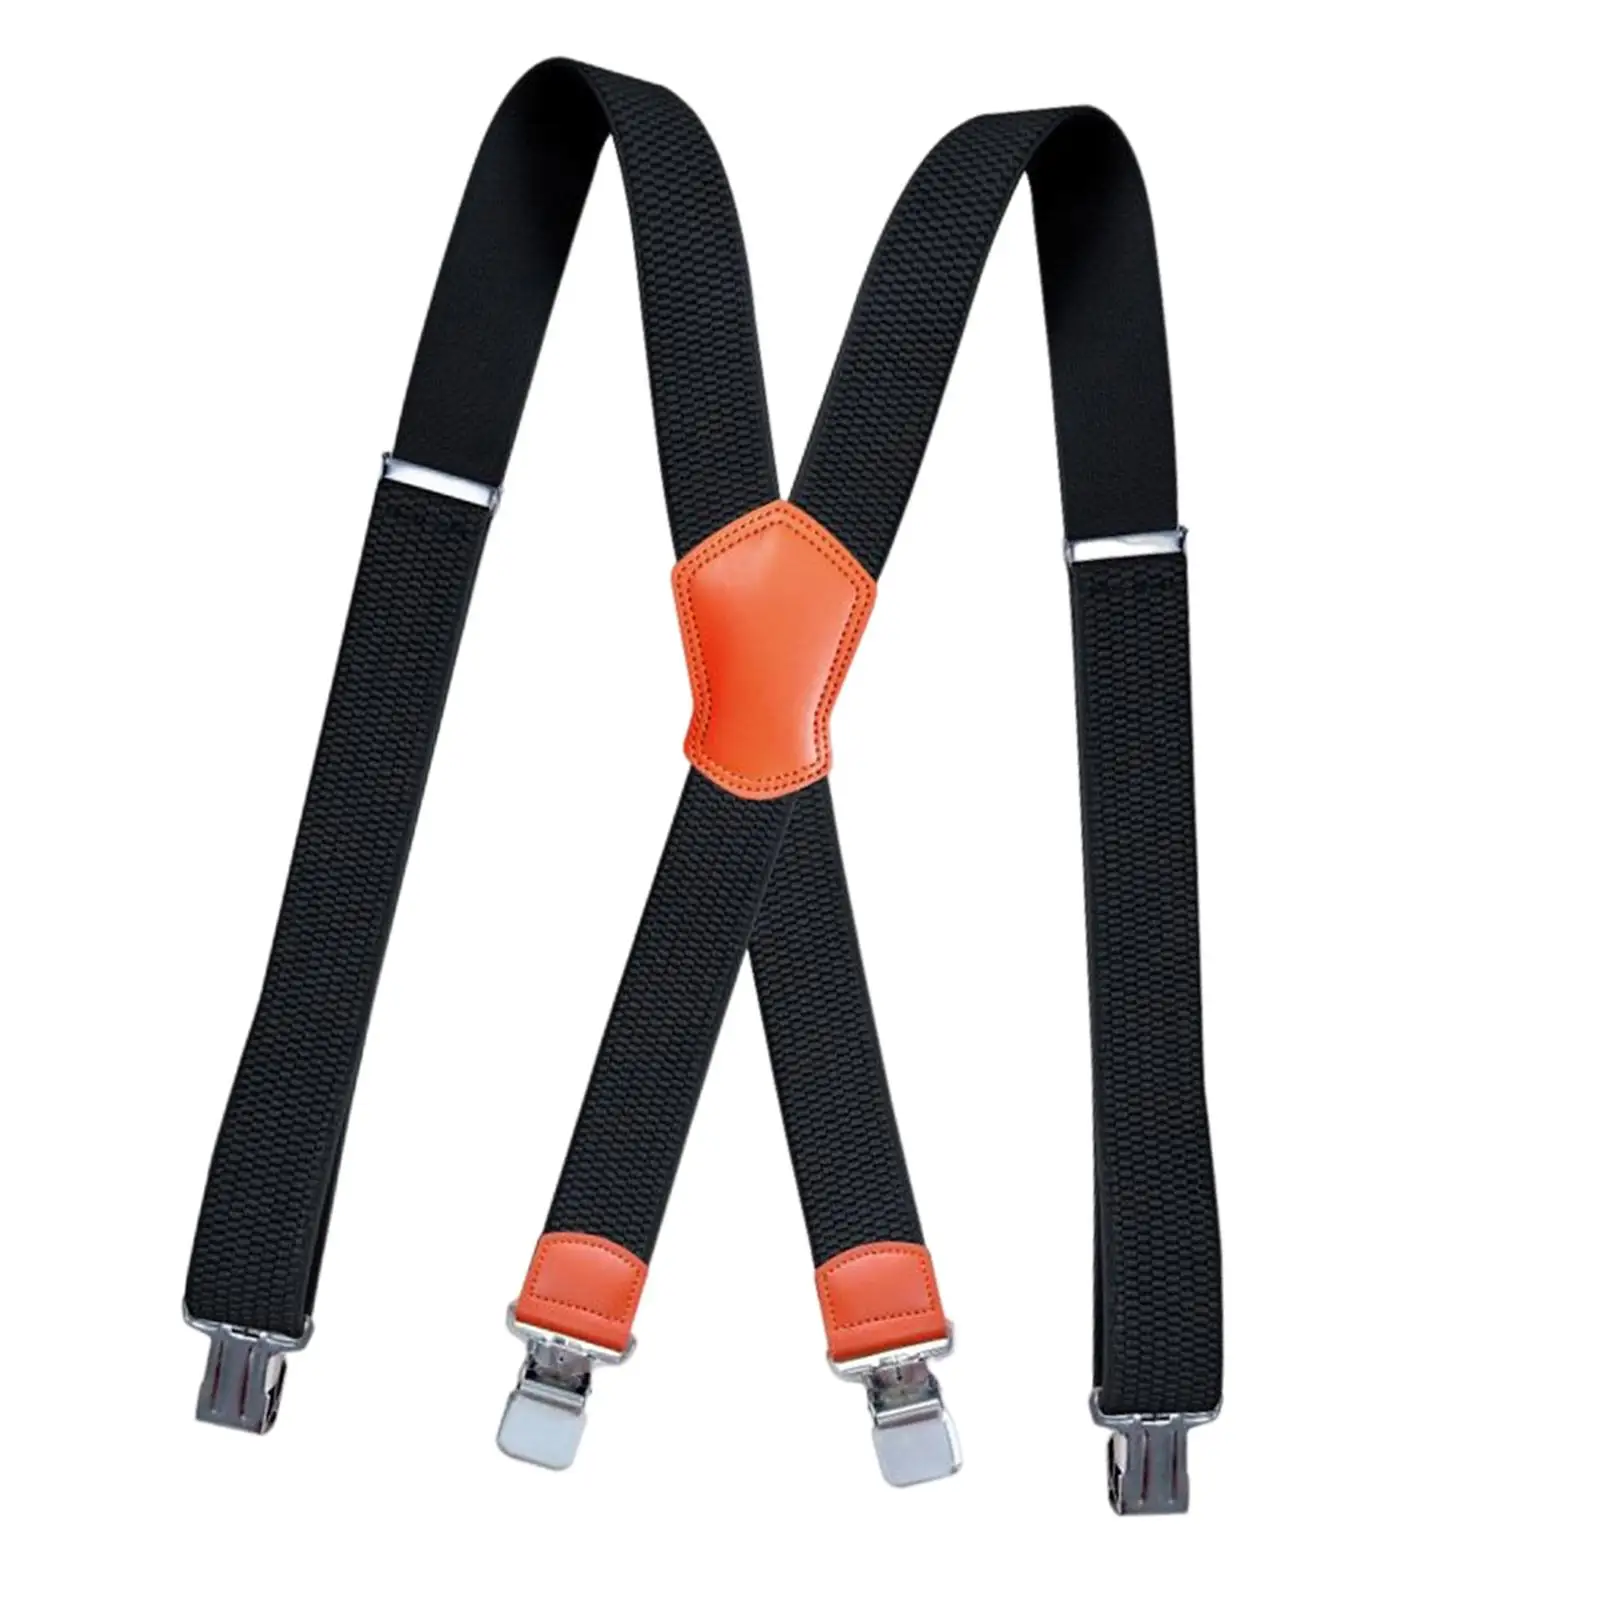 Suspenders for Men, X Shaped Design Adjustable Suspender with 4 Metal Clips Groomsmen Gift